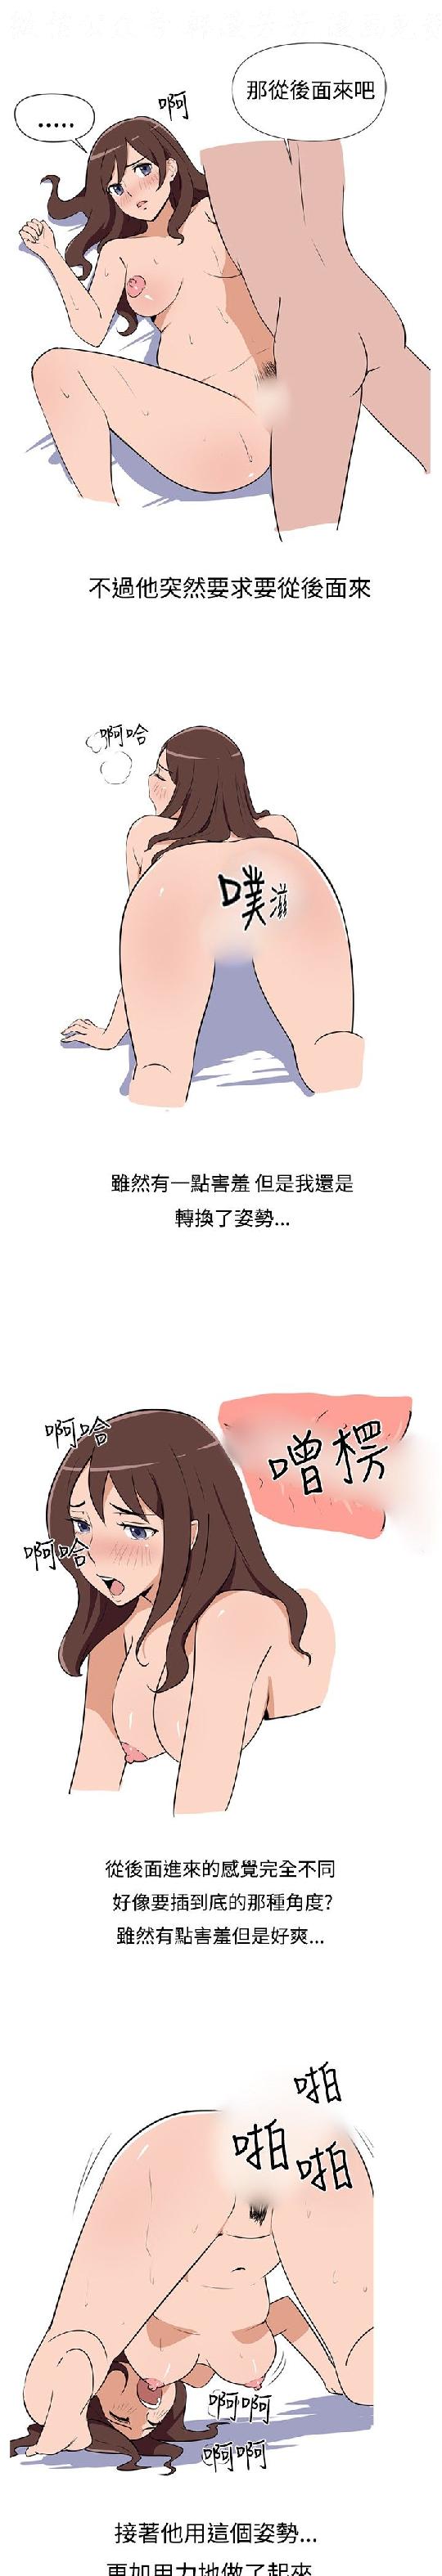 調教女大生【中文】 page 21 full